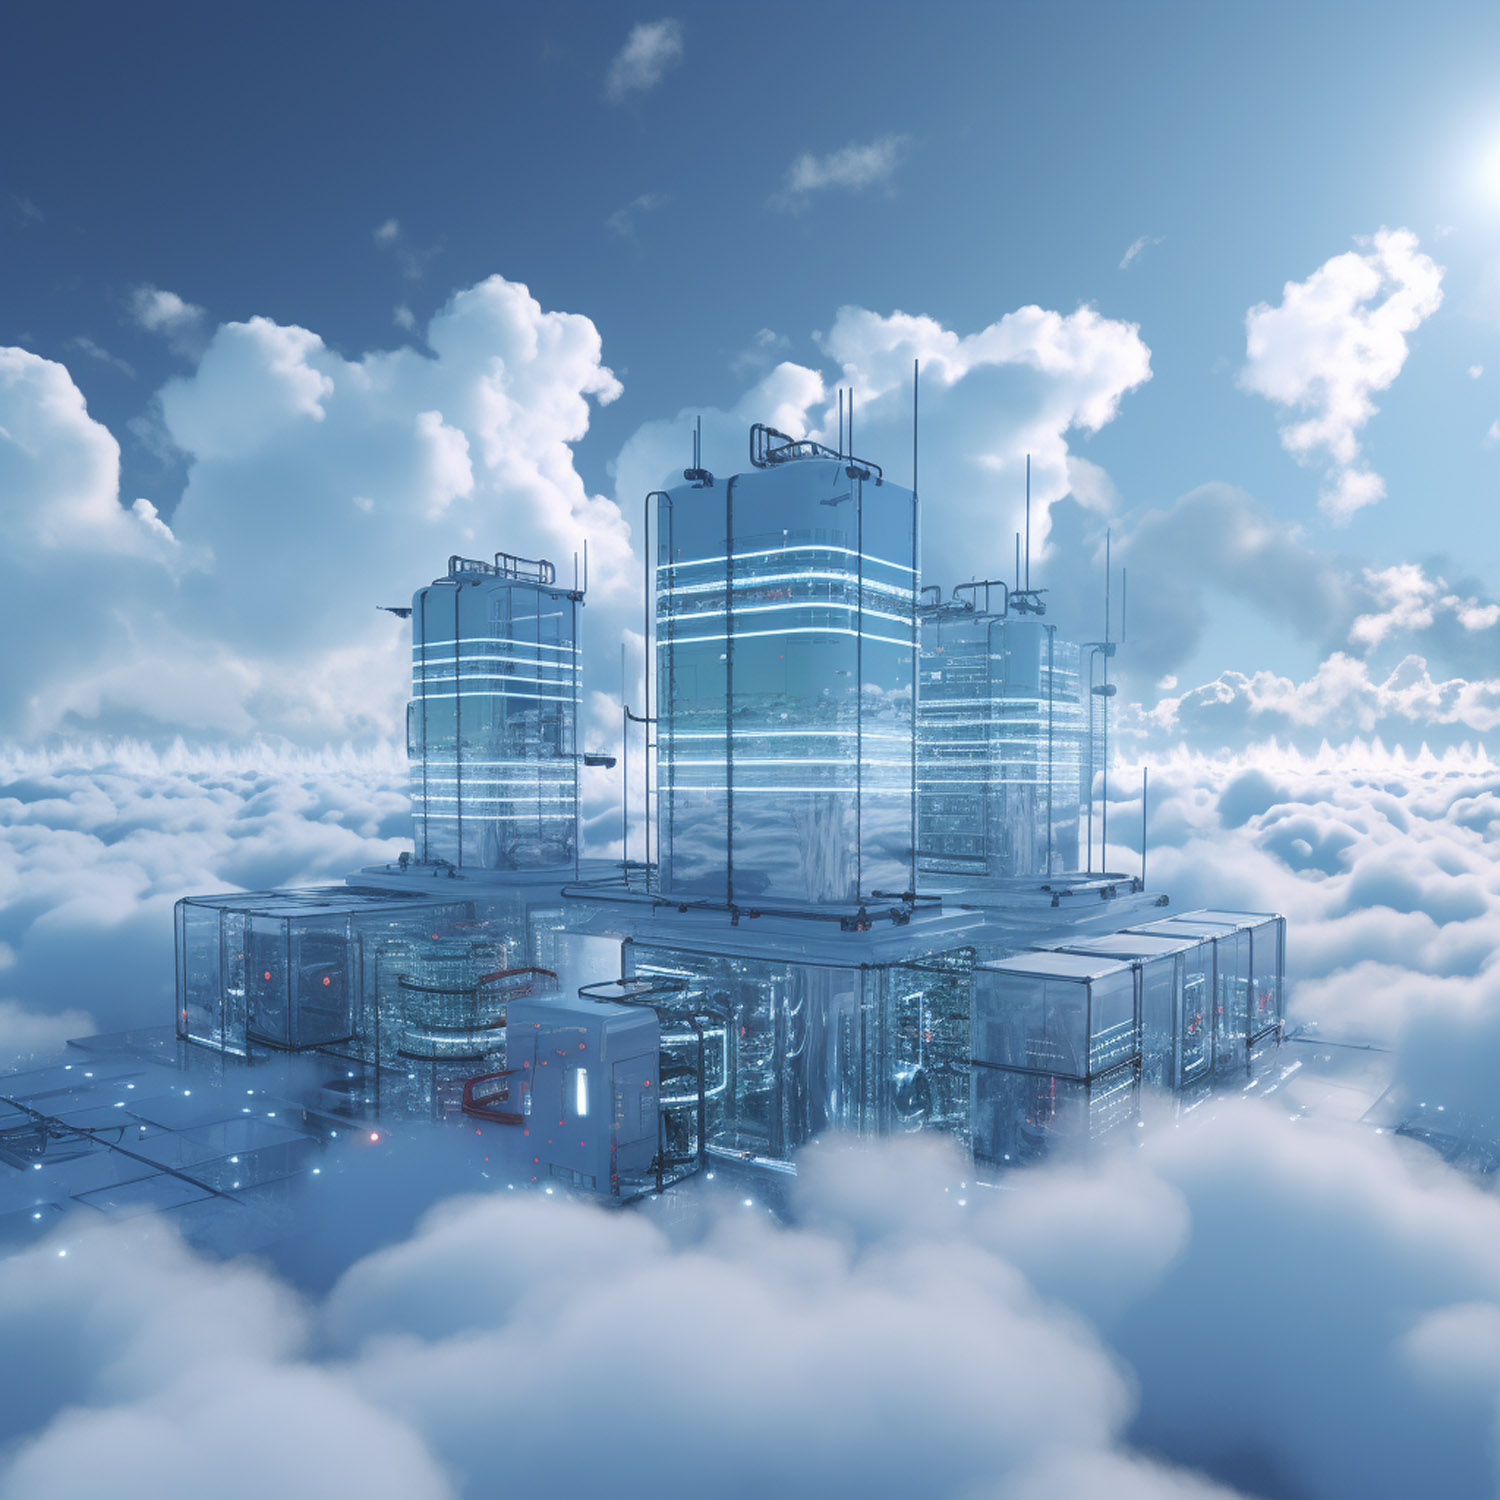 Futuristic data center in the clouds